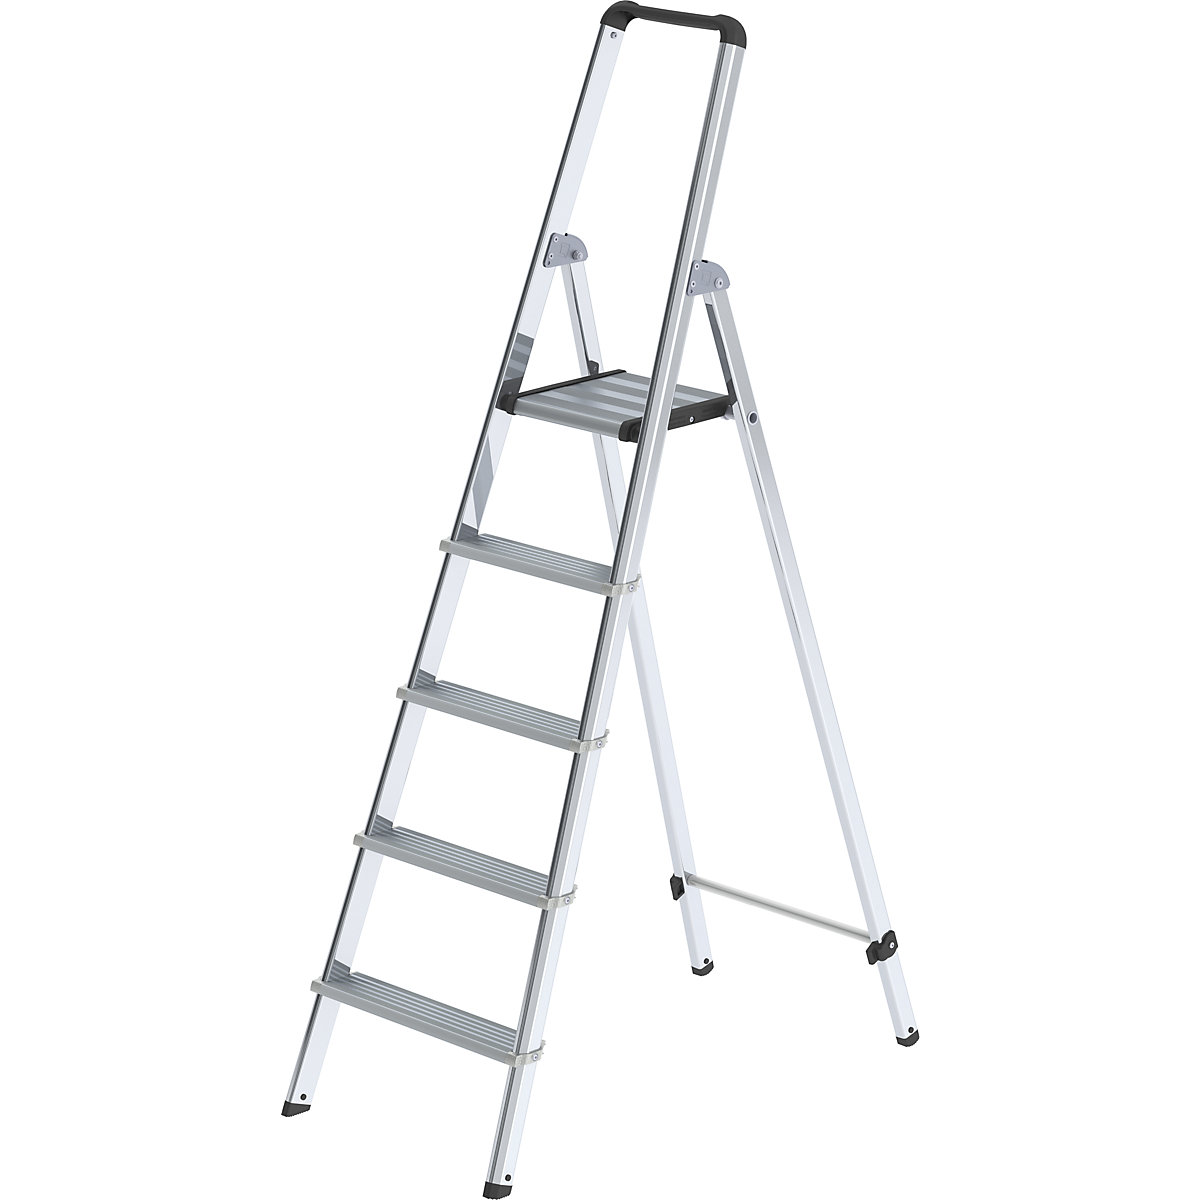 MUNK – Escalera tipo tijera de peldaños planos de aluminio, de ascenso por un lado, con larguero ergonómico y bandeja, 5 peldaños